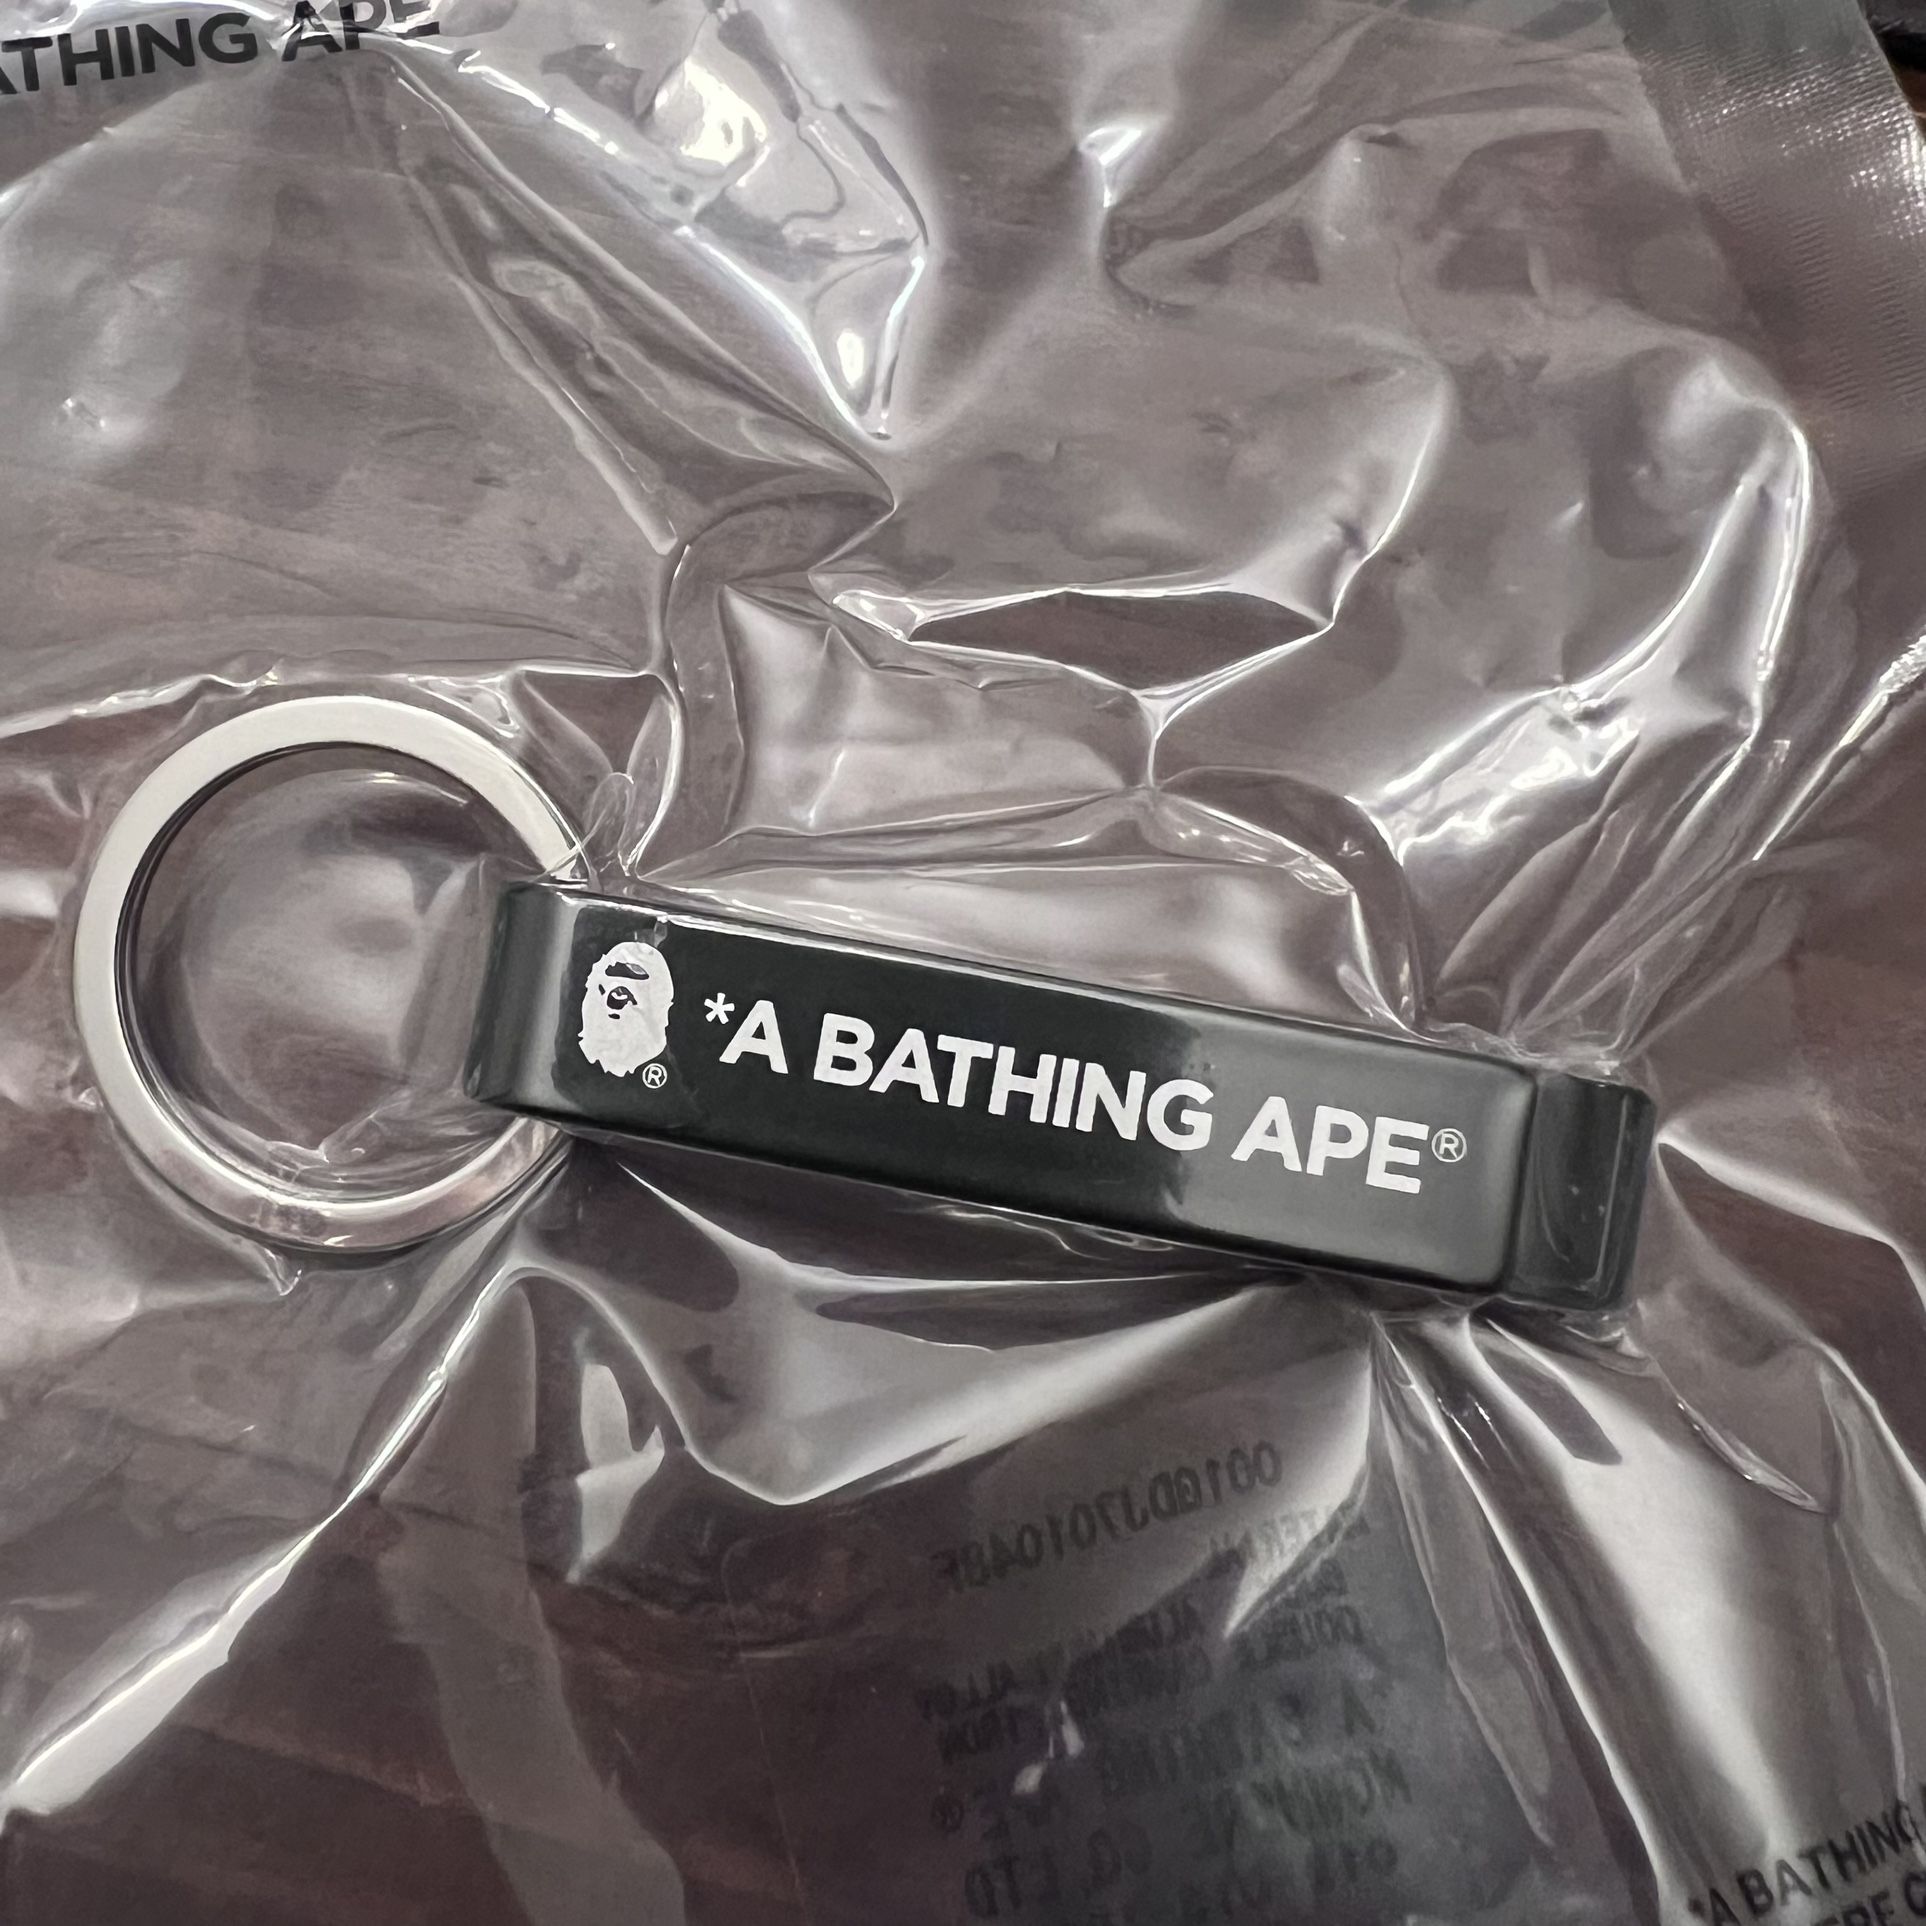 A BATHING APE BAPE Bottle Opener Keychain